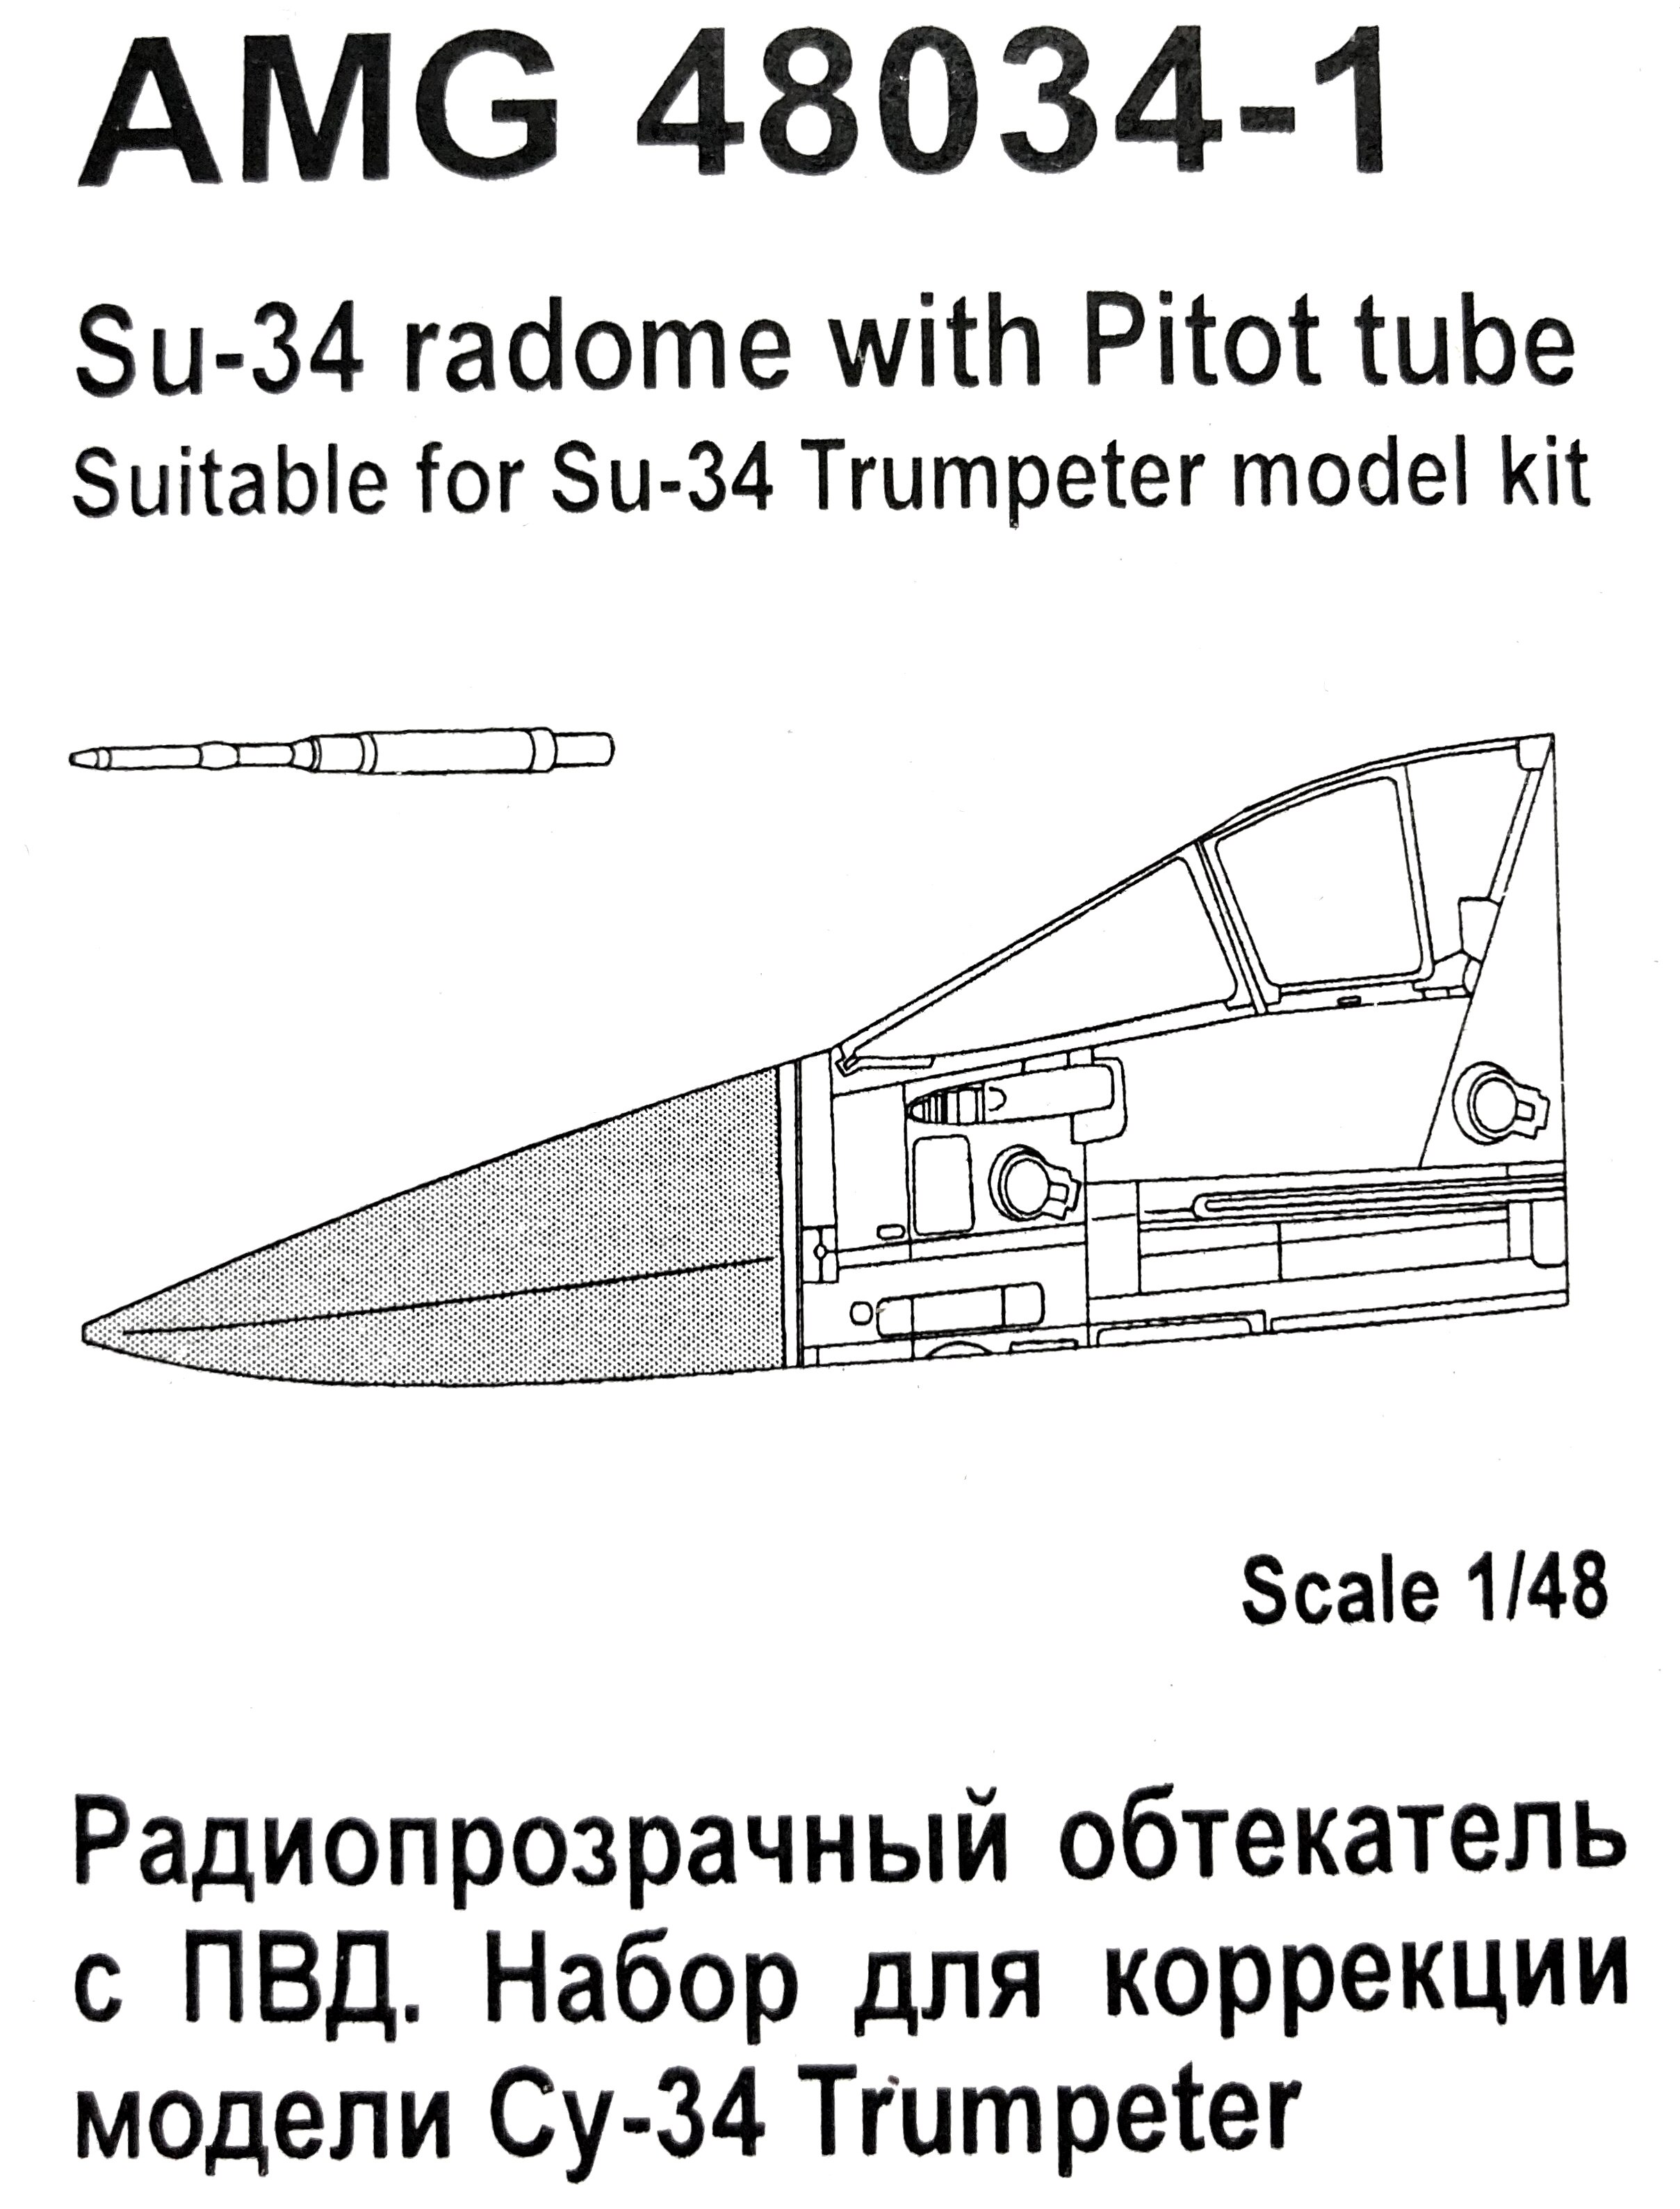 AMG 48034-1  дополнения из смолы  Радиопрозрачный обтекатель Су-34 и ПВД  (1:48)